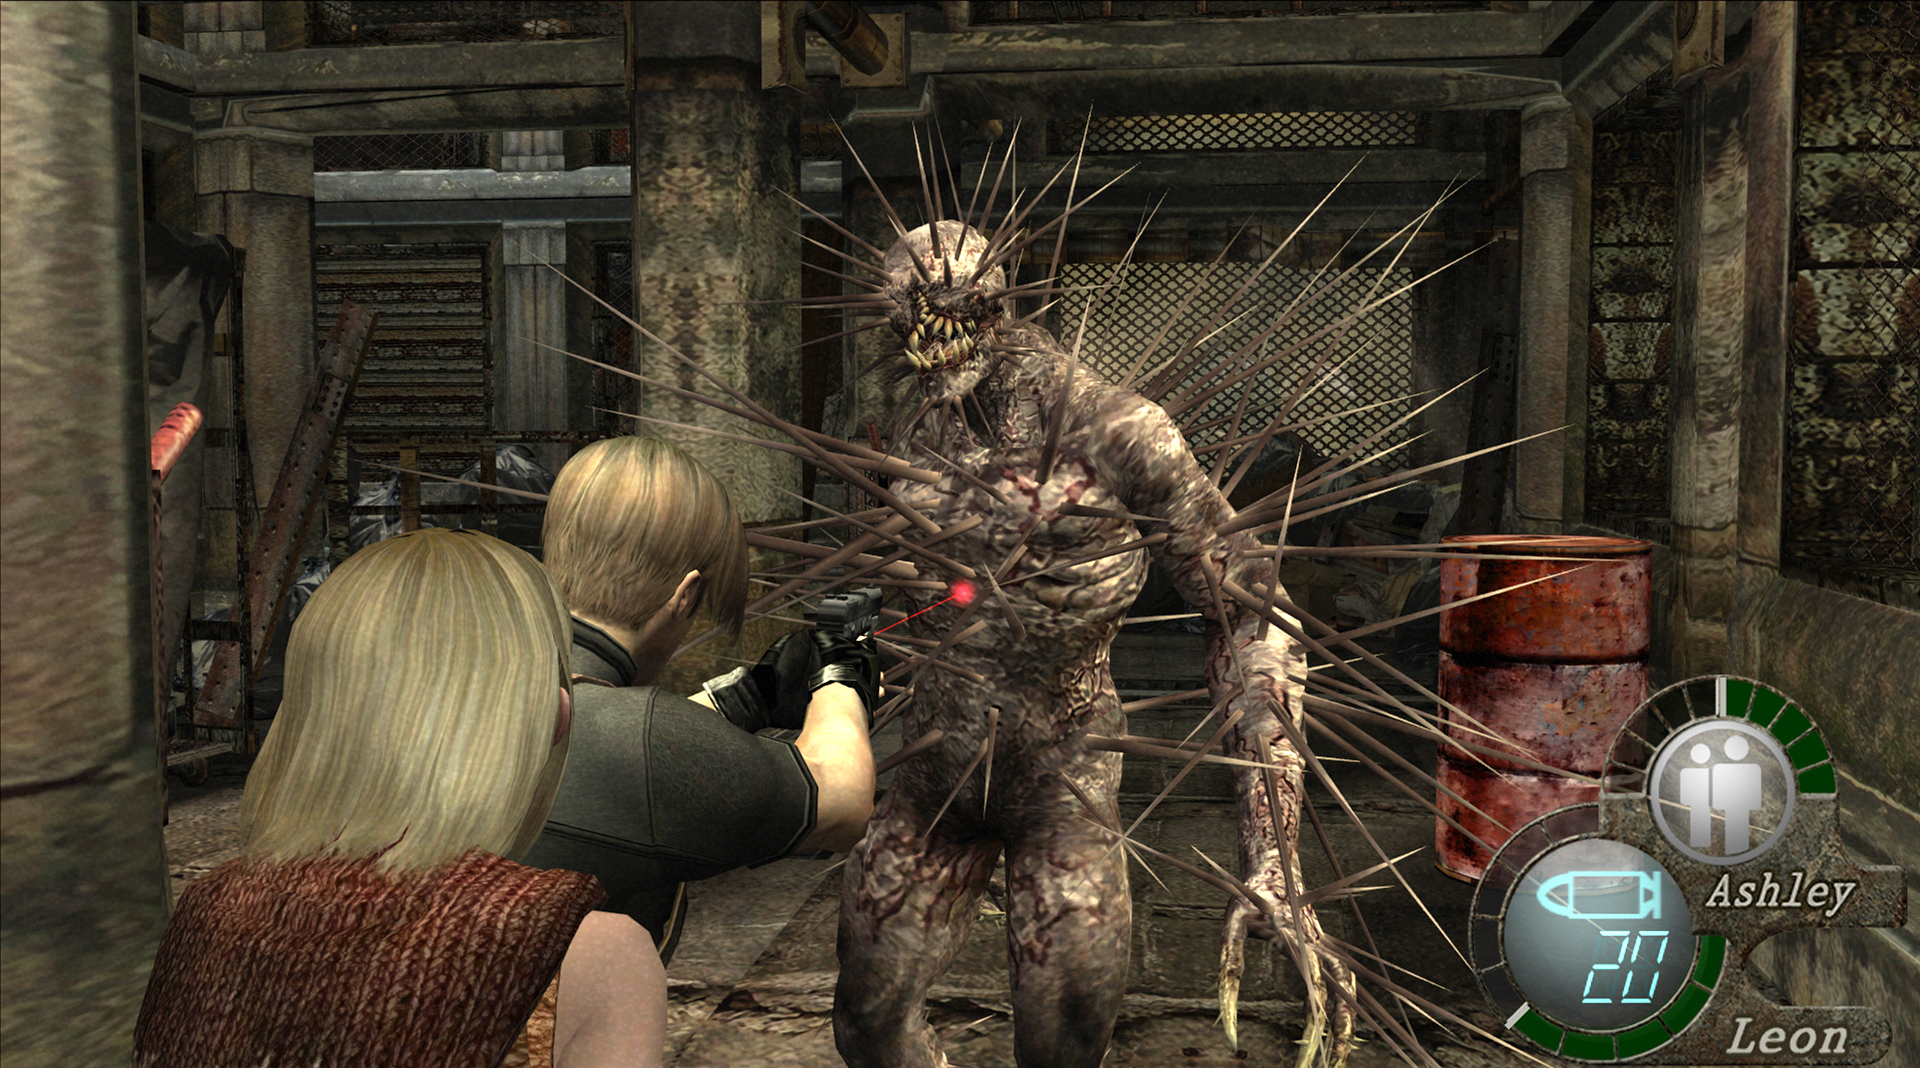 Economize 75% em Resident Evil 2 no Steam